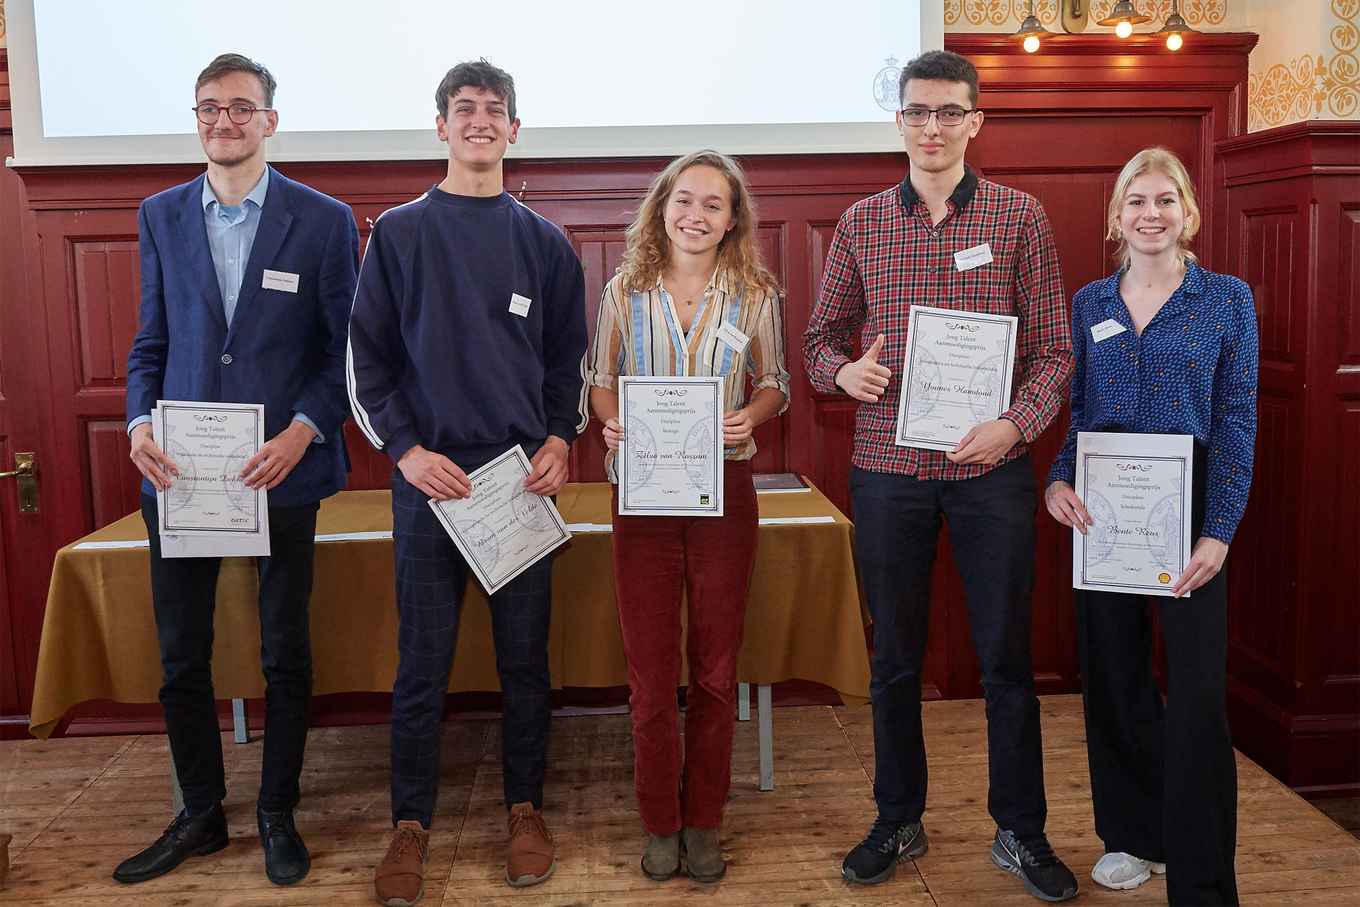 De prijswinnende studenten van de FNWI (vlnr): Constantijn, Bram, Zilva, Younes, Bente. Foto: Hilde de Wolf.